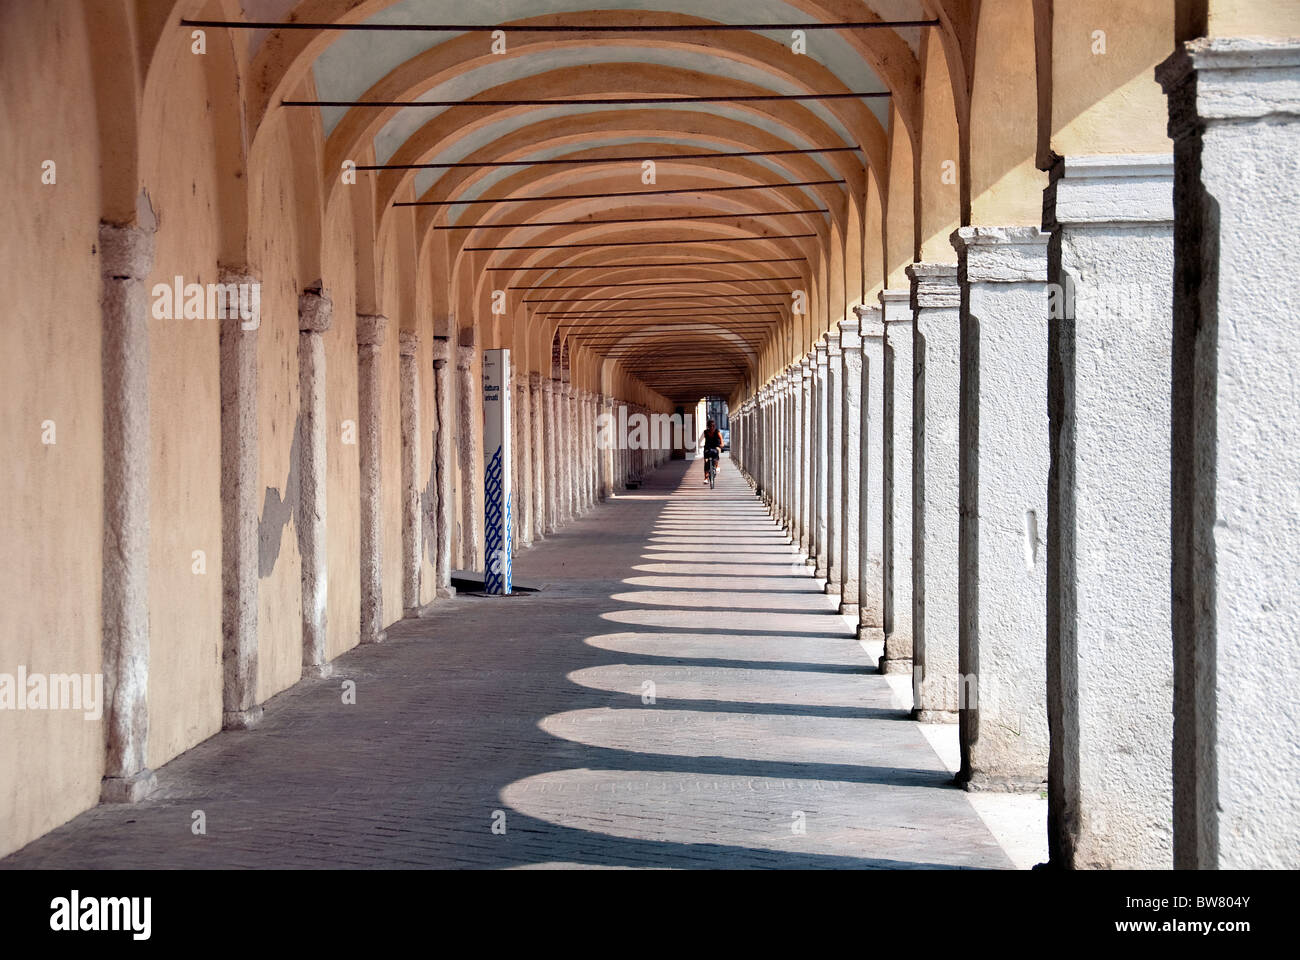 Colonnade in Comacchio, Emilia Romagna, Italy Stock Photo